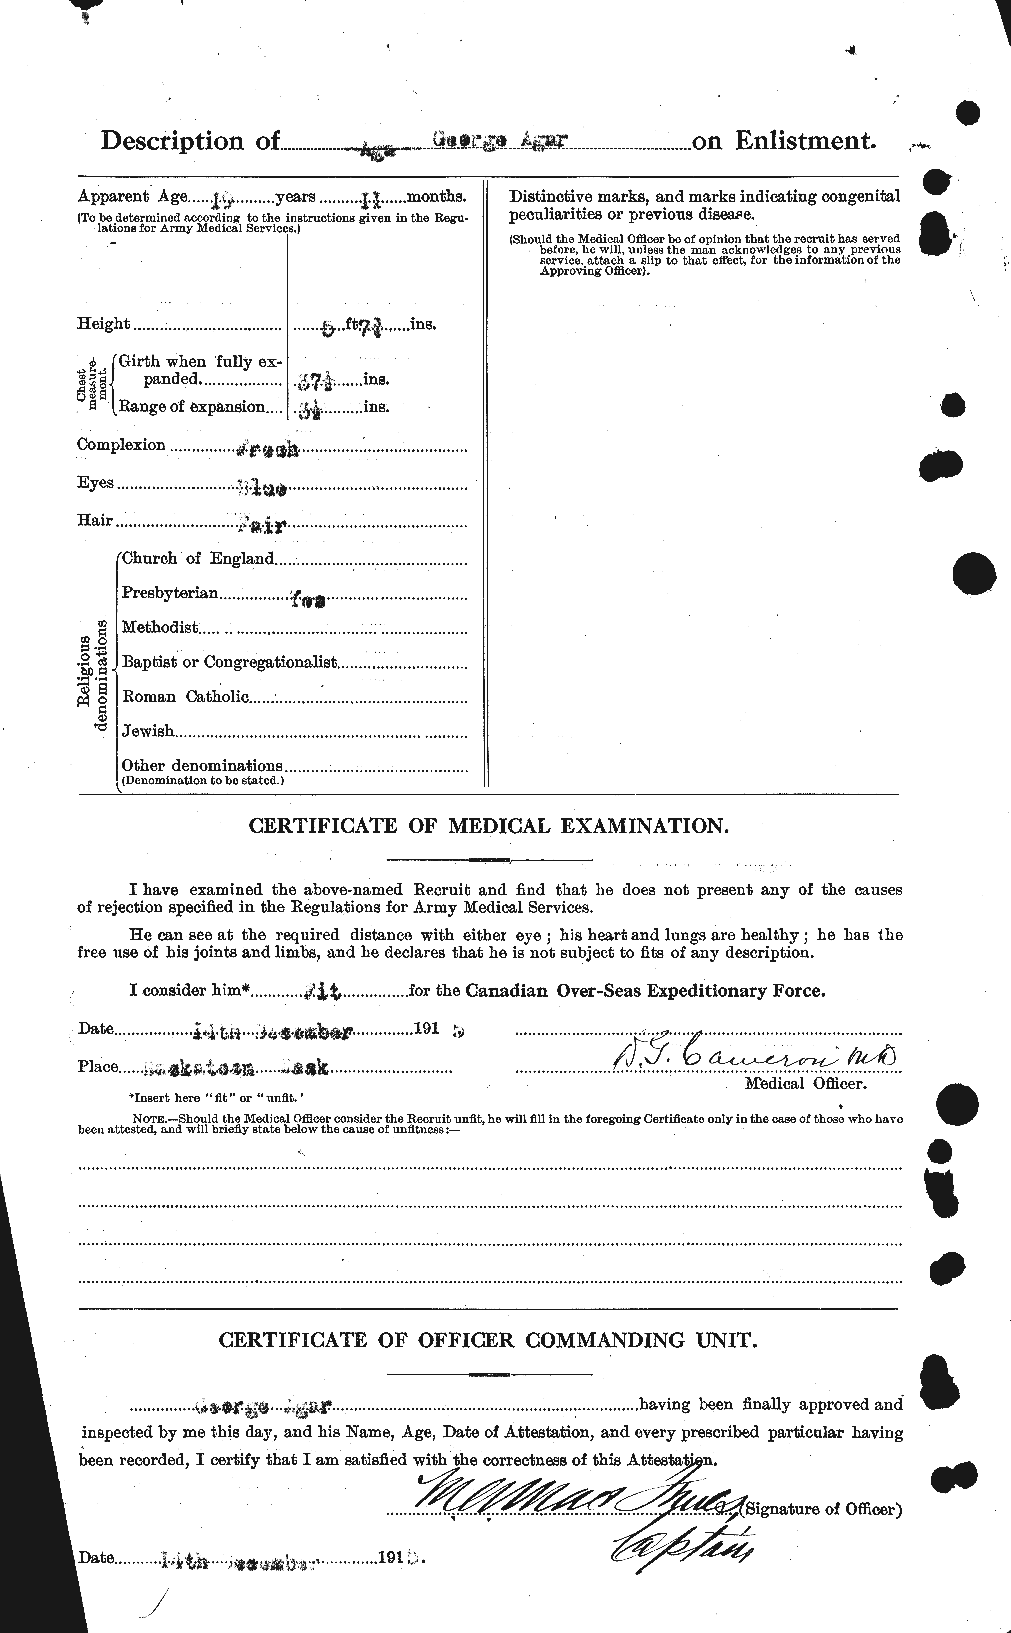 Dossiers du Personnel de la Première Guerre mondiale - CEC 203667b